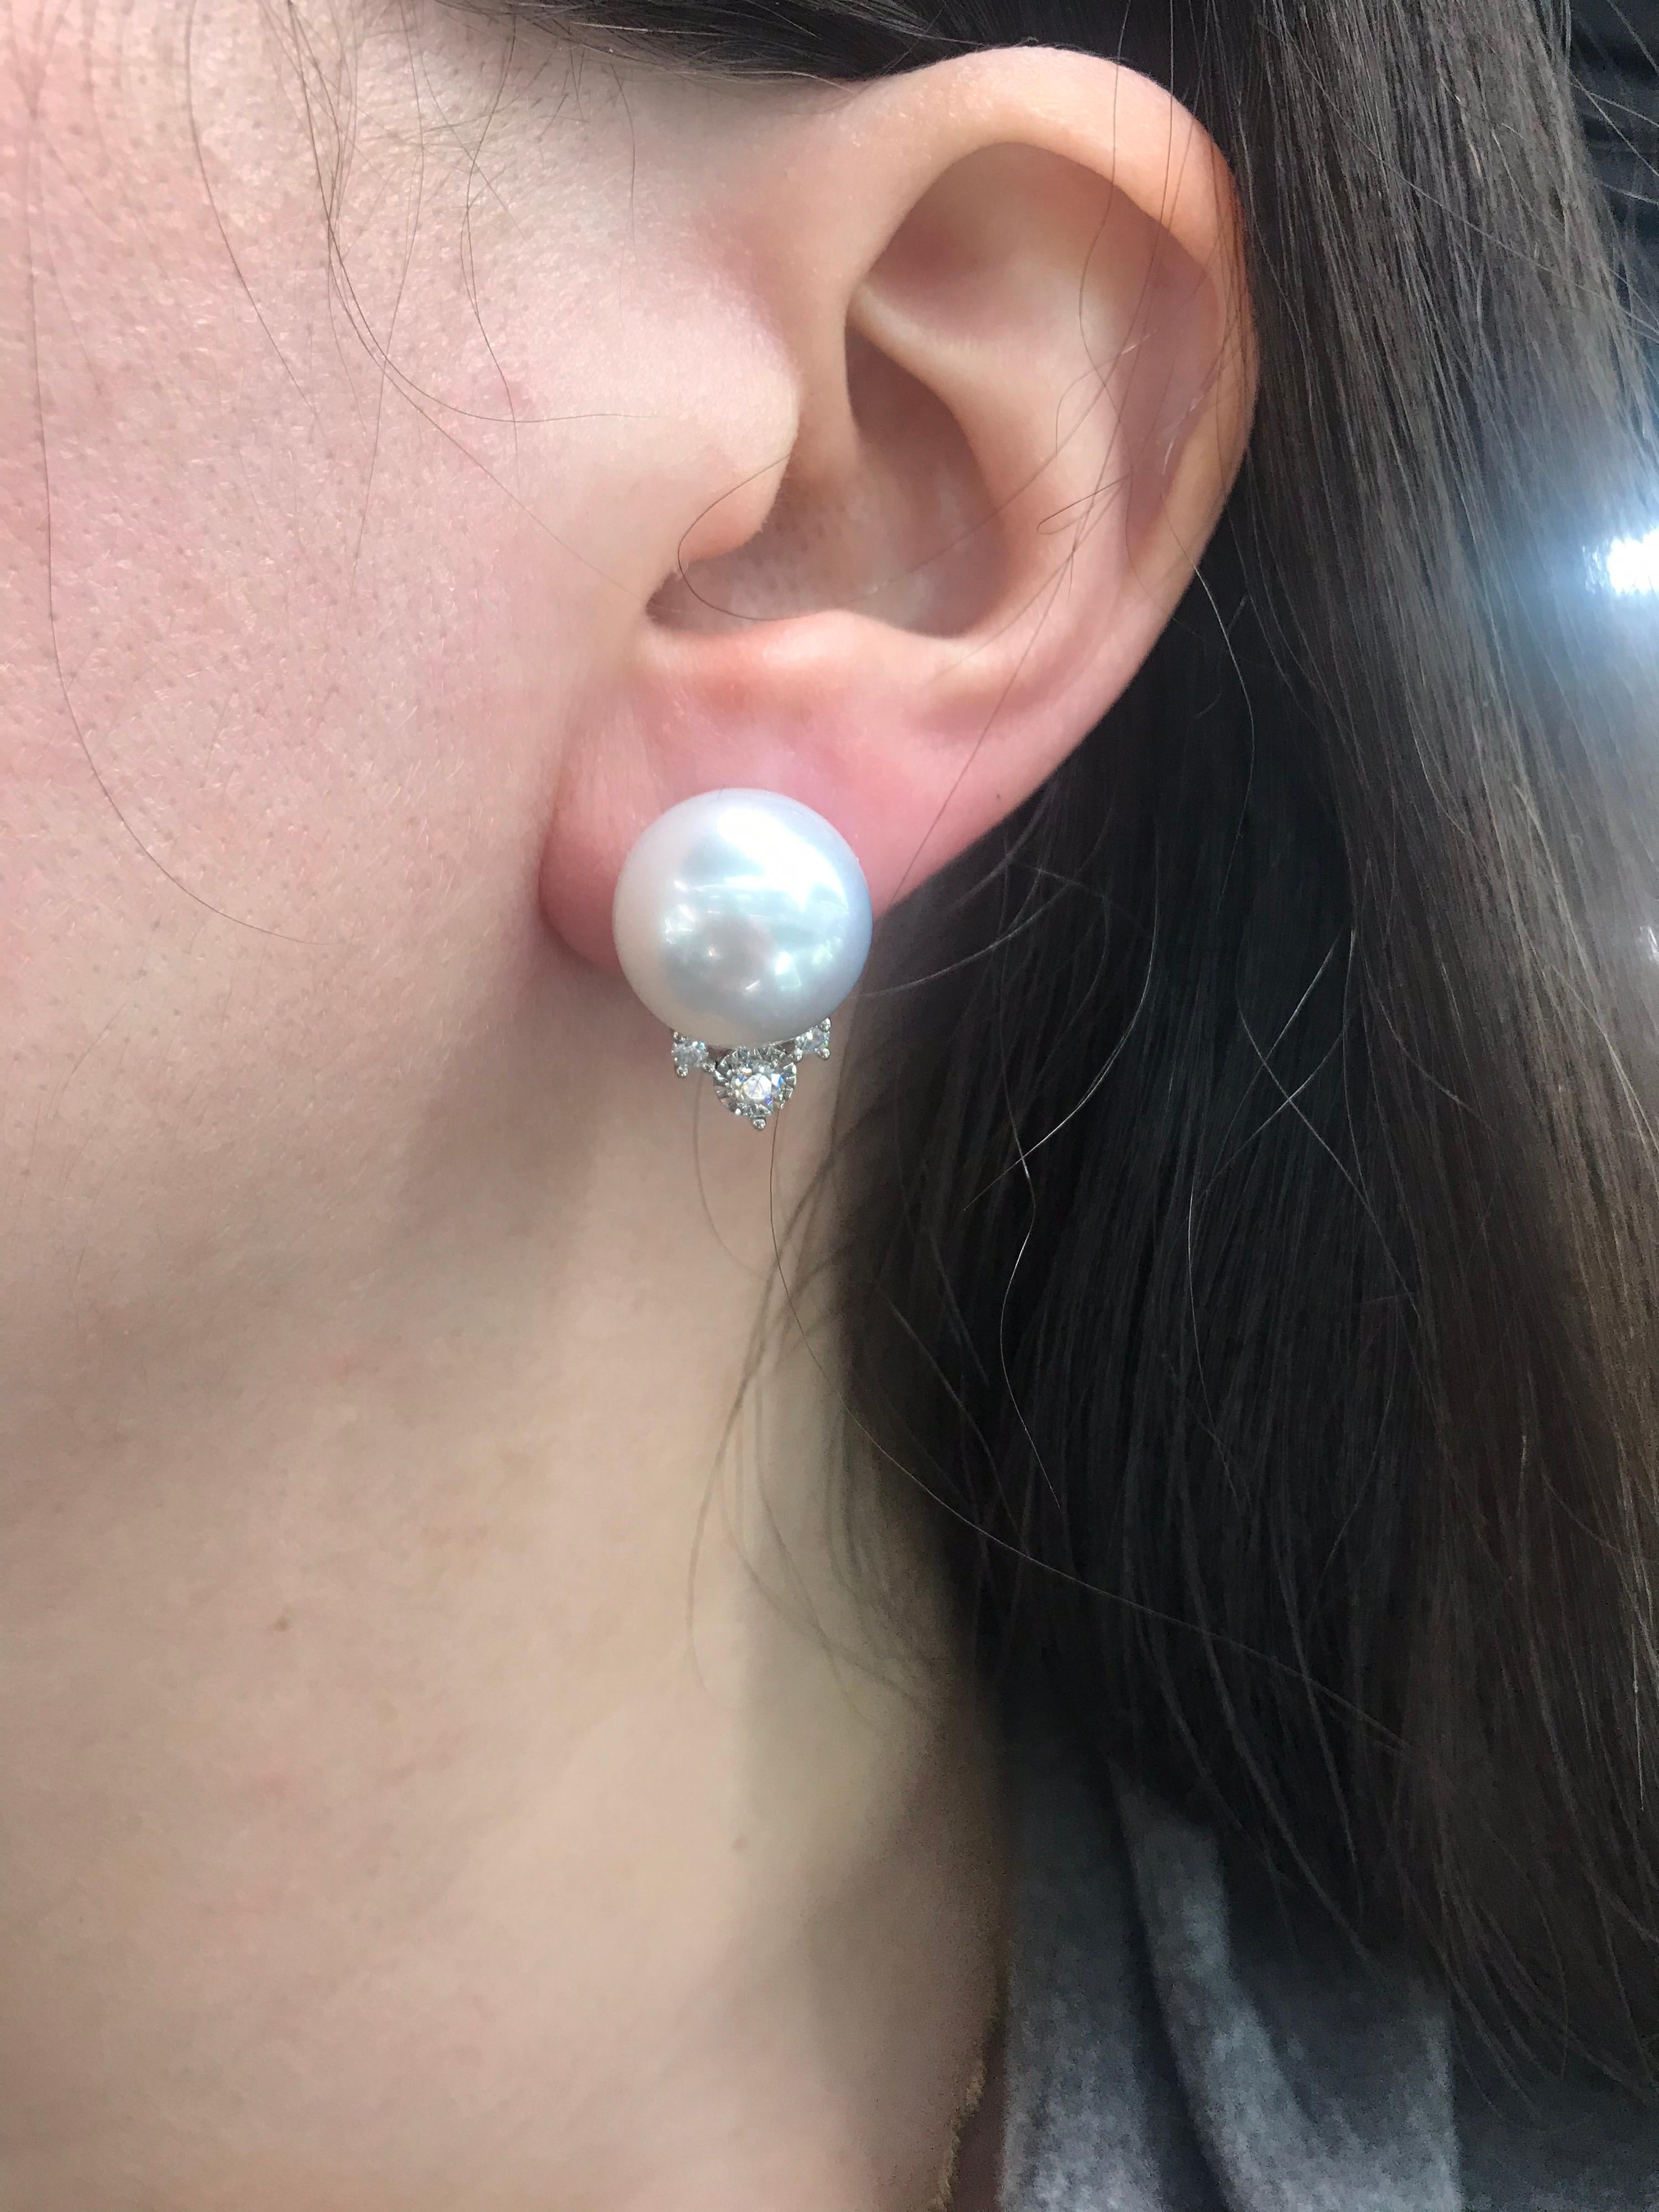 13mm earrings actual size